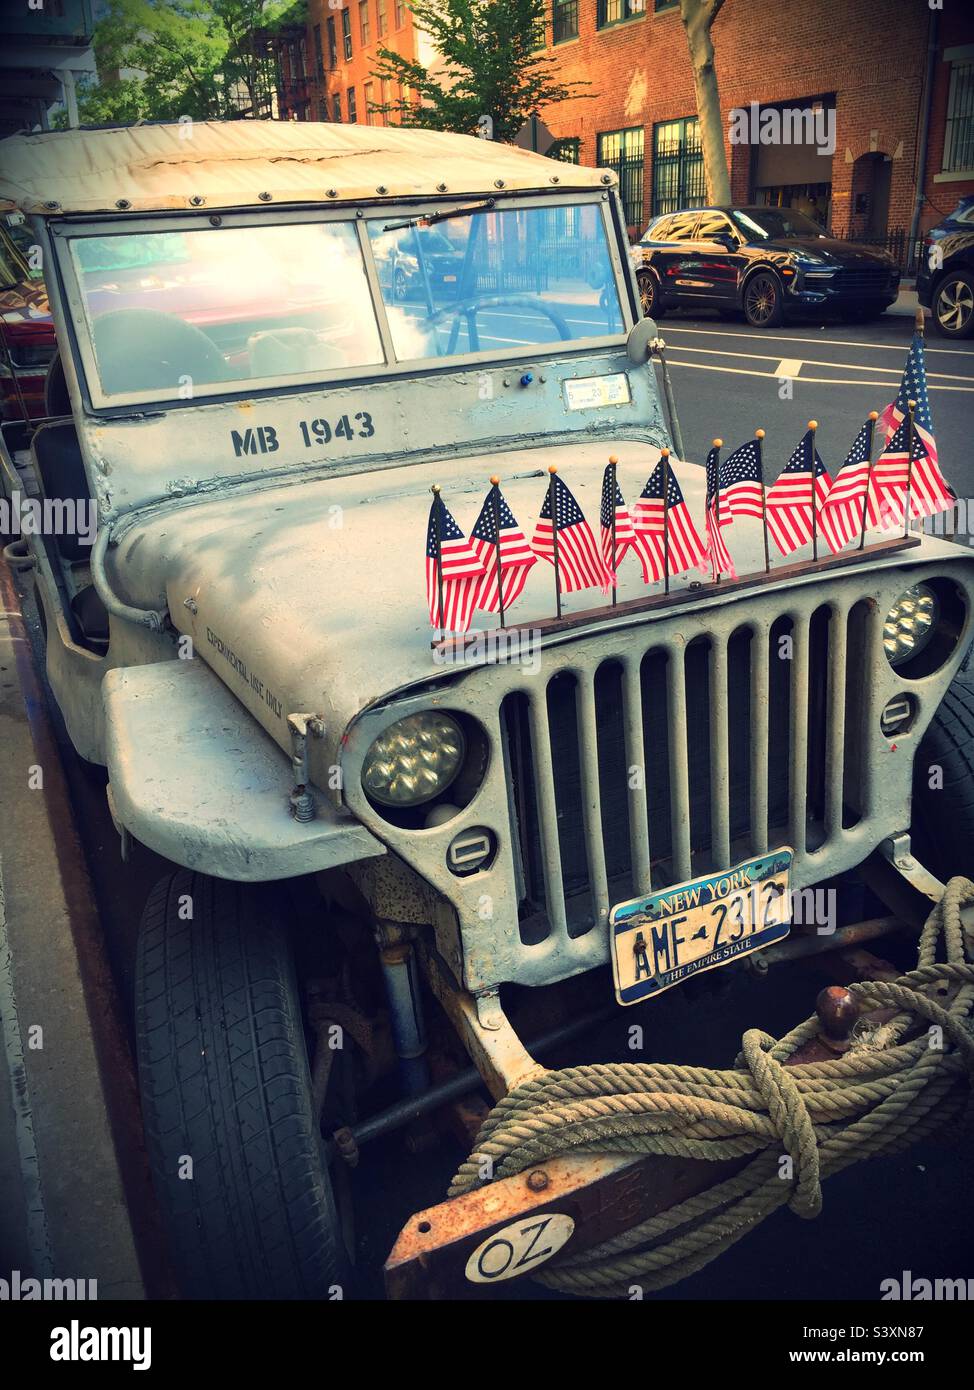 DRAPEAUX AMÉRICAINS sur une Jeep militaire de 1943 garée à New York Banque D'Images